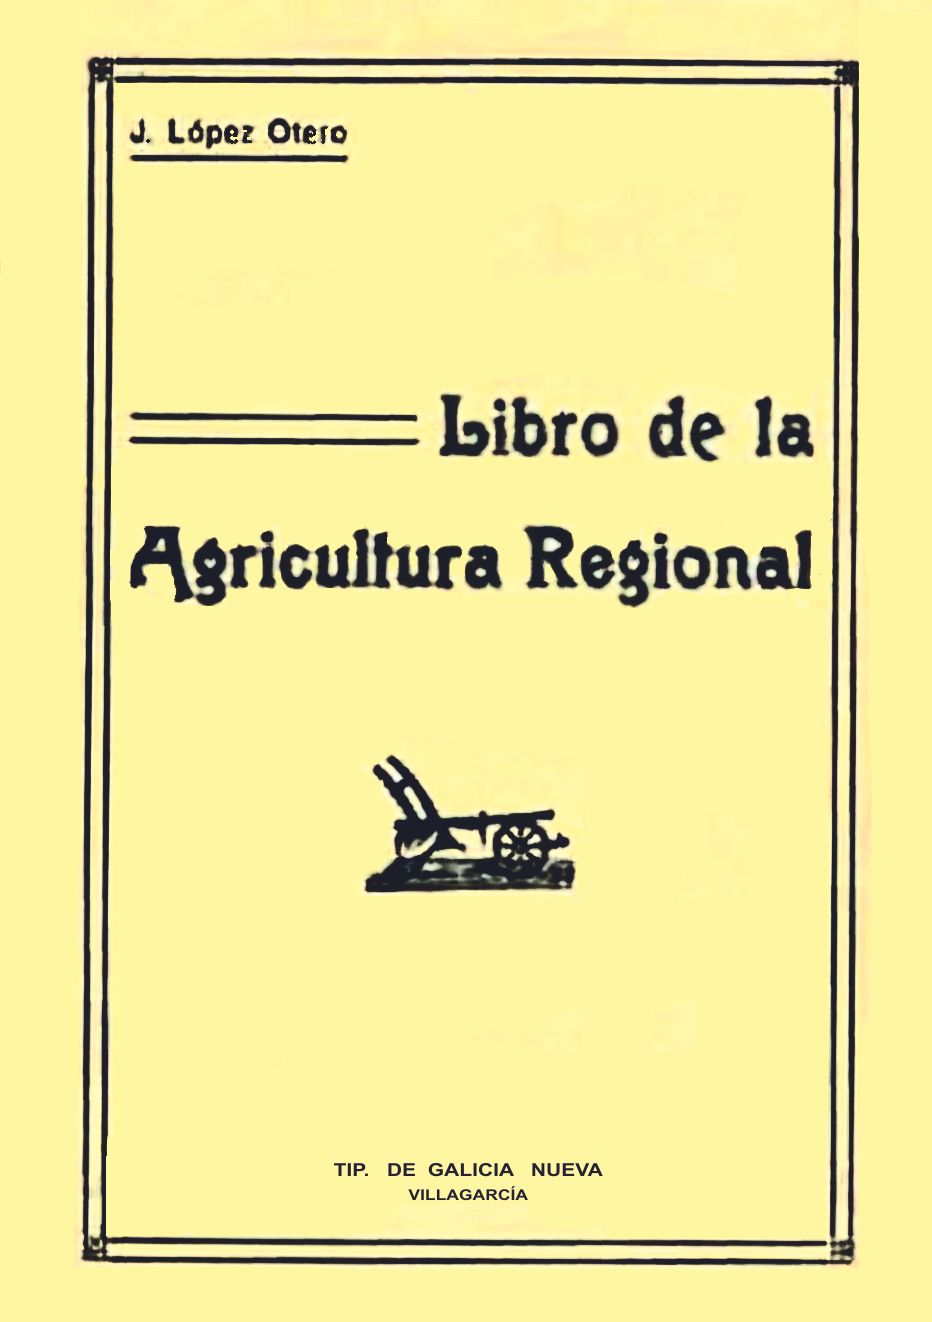 Libro agricultura 1931.